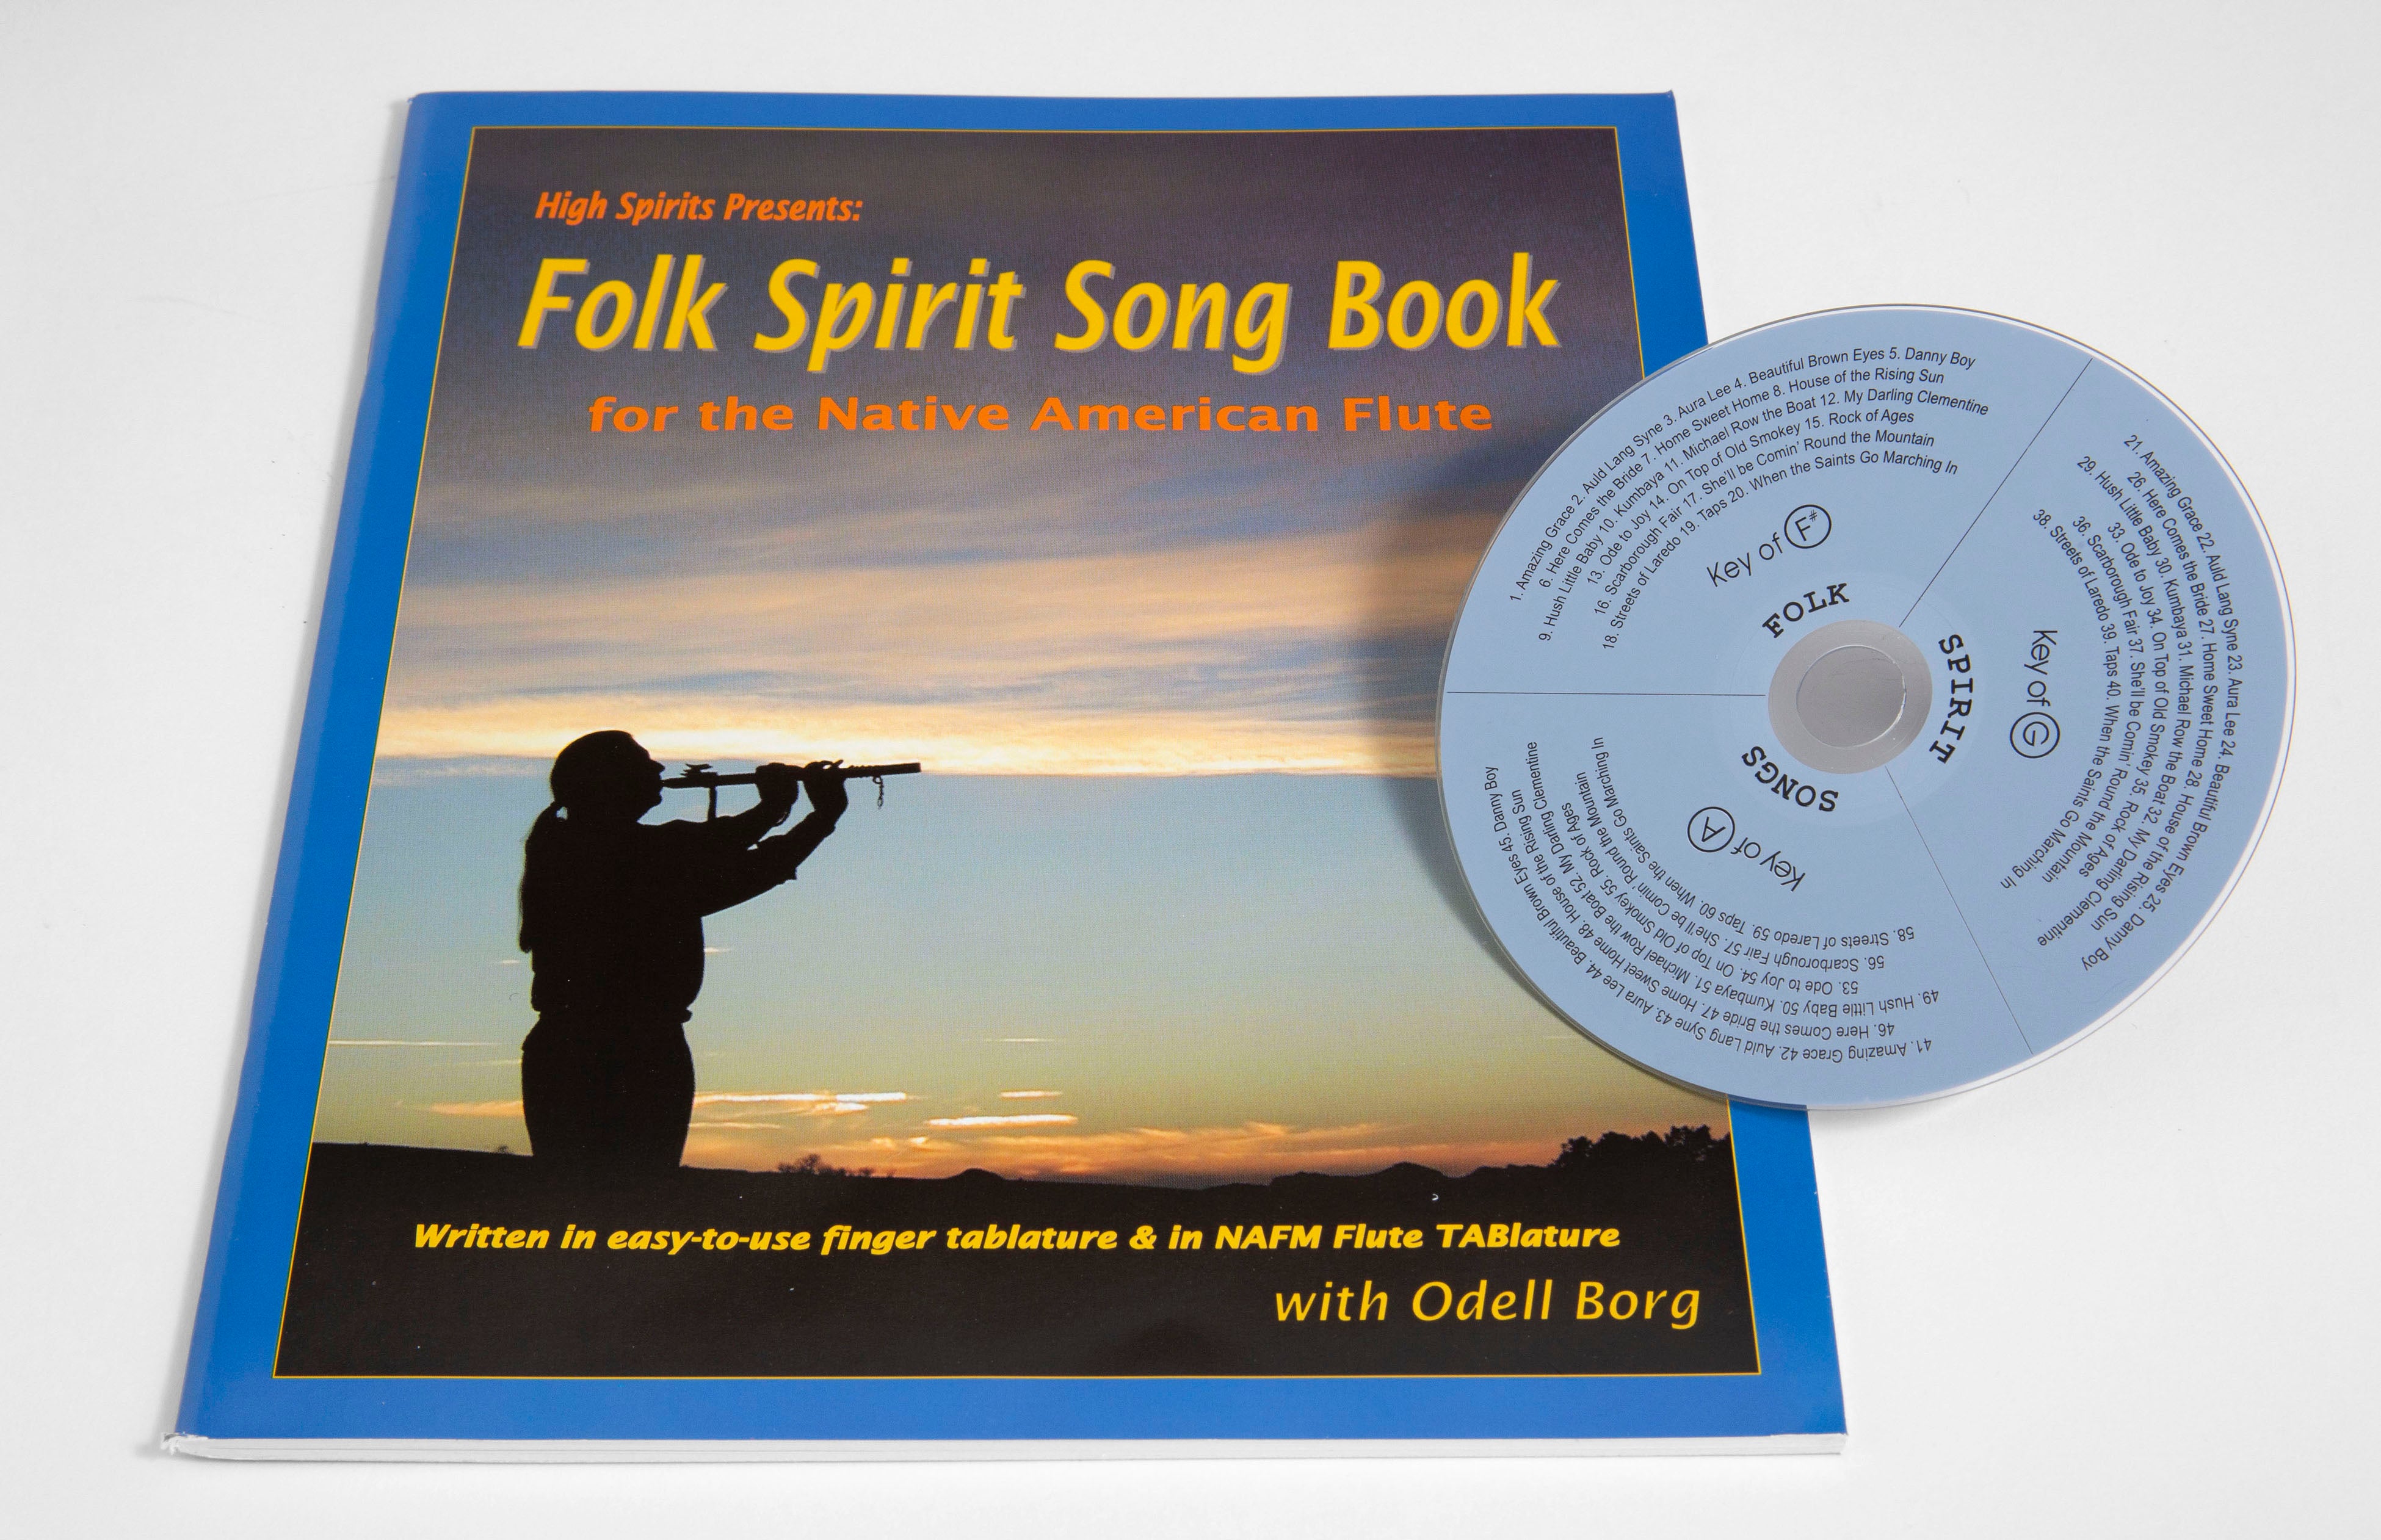 Folk Spirit Song Book